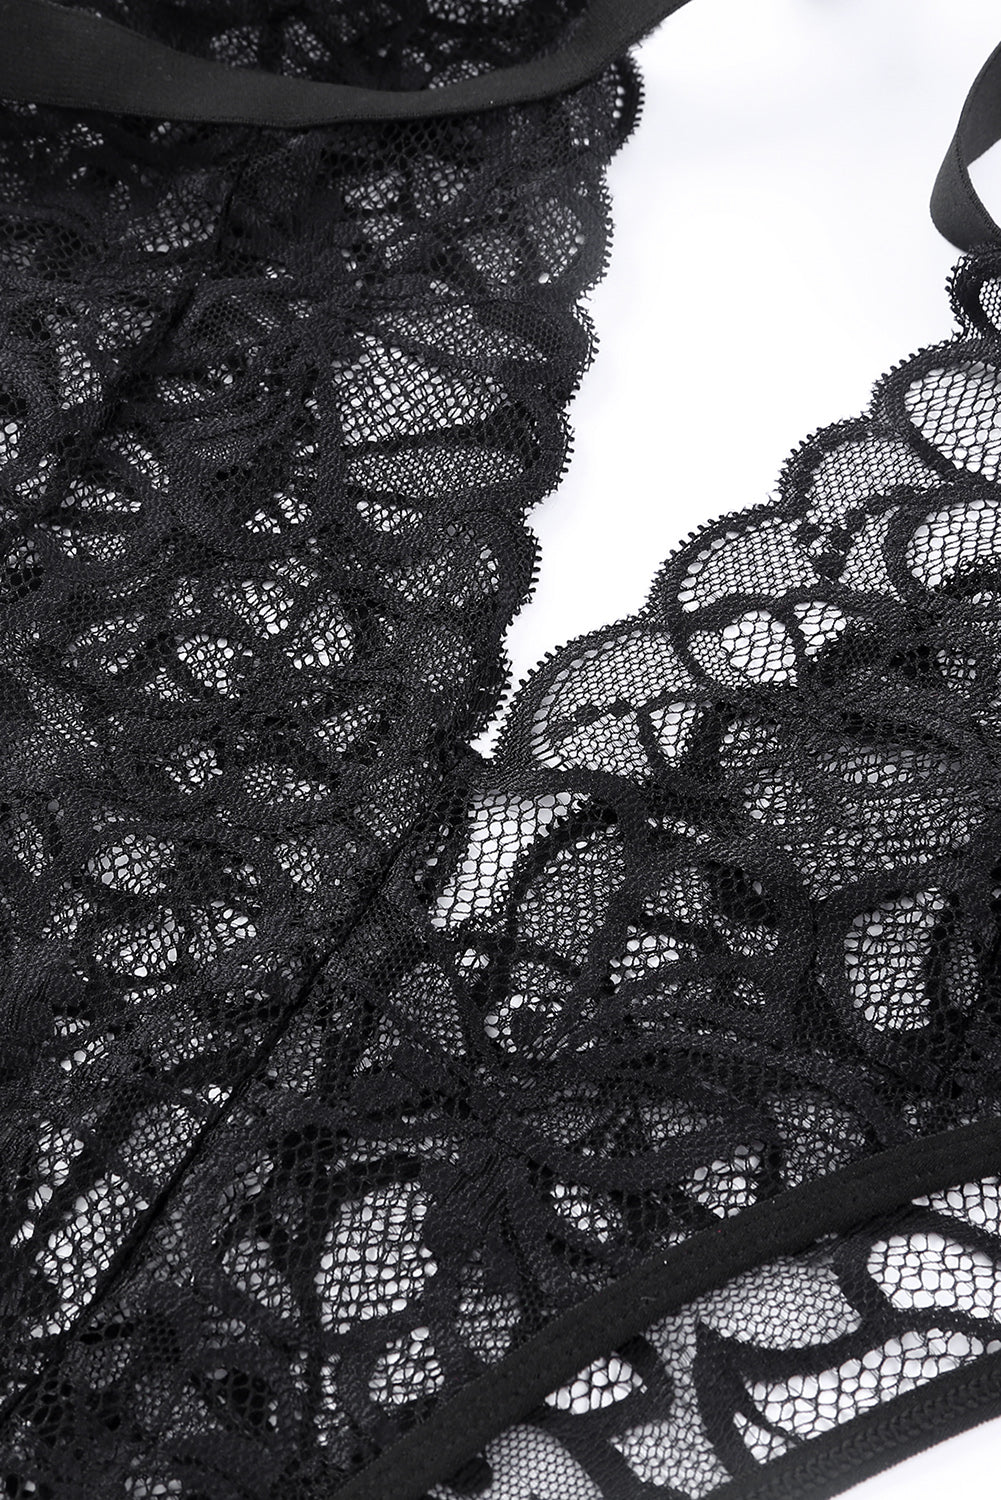 Black Crossed Straps Sheer Lace Teddy with Garter Belt Teddy Lingerie JT's Designer Fashion